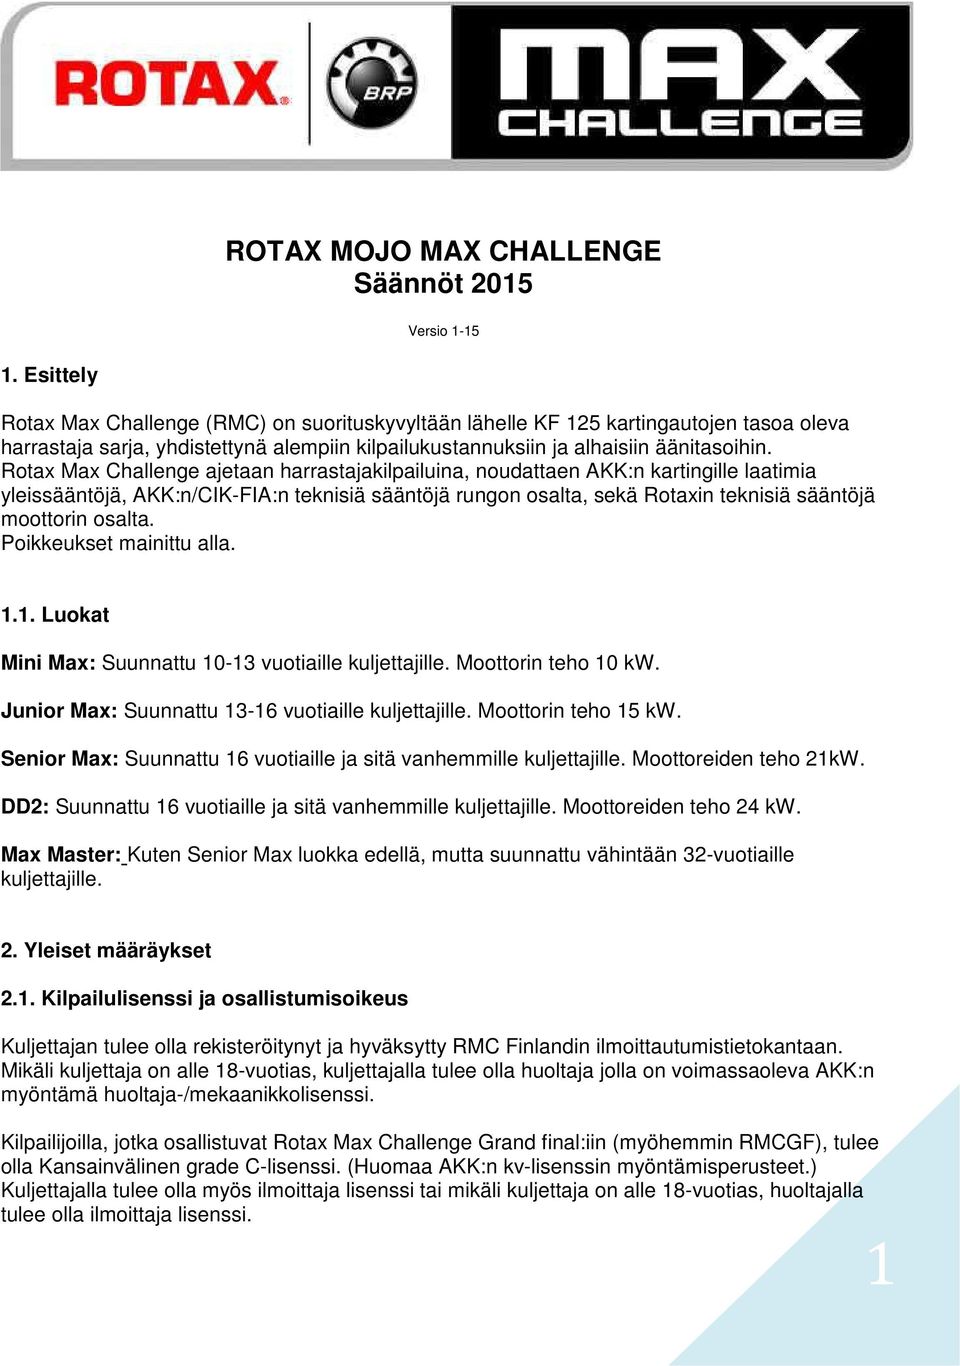 Rotax Max Challenge ajetaan harrastajakilpailuina, noudattaen AKK:n kartingille laatimia yleissääntöjä, AKK:n/CIK-FIA:n teknisiä sääntöjä rungon osalta, sekä Rotaxin teknisiä sääntöjä moottorin